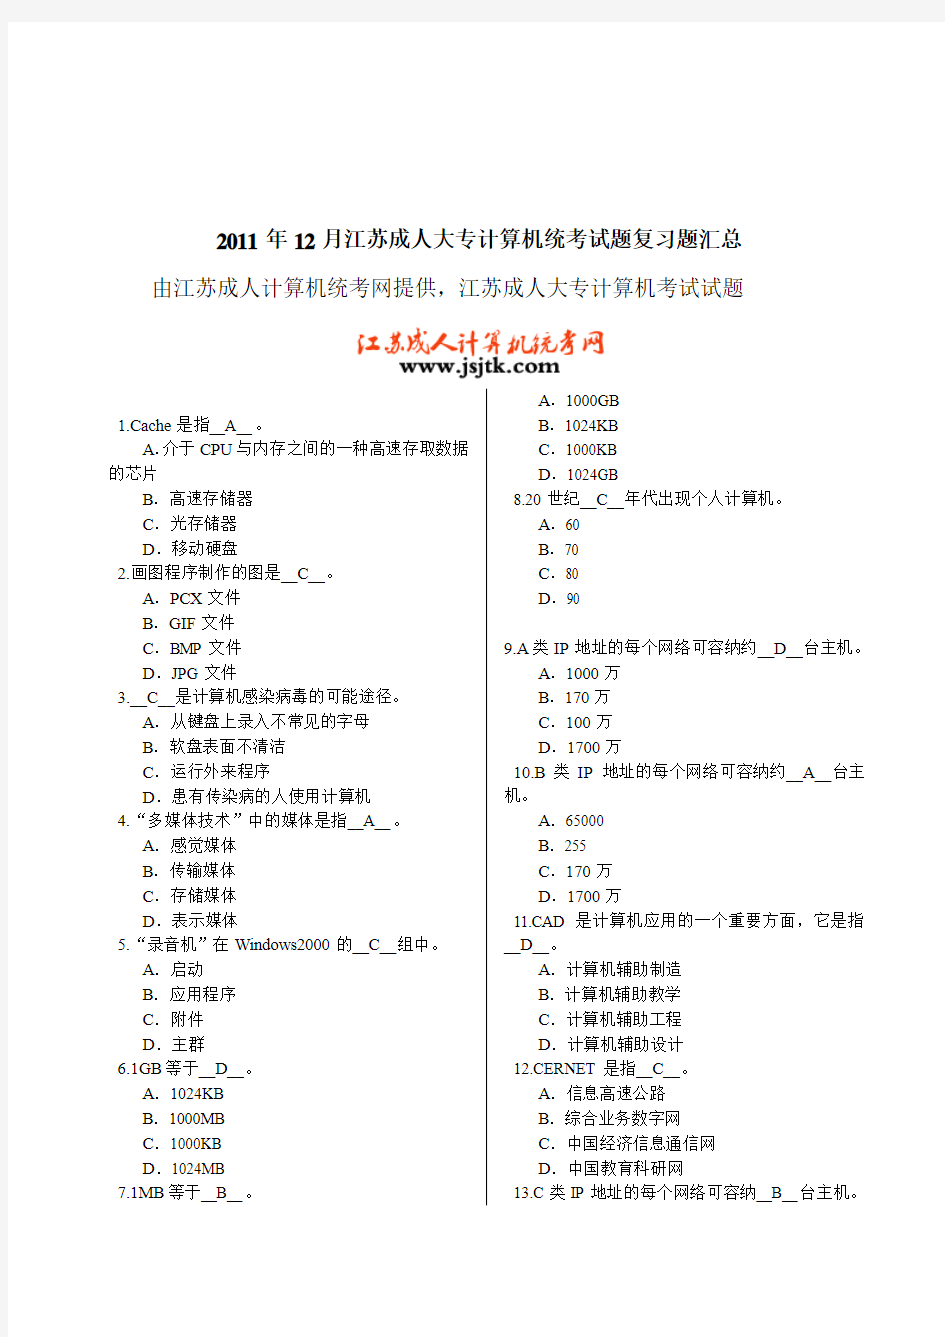 2011年12月江苏成人大专计算机统考试题复习题汇总[1]